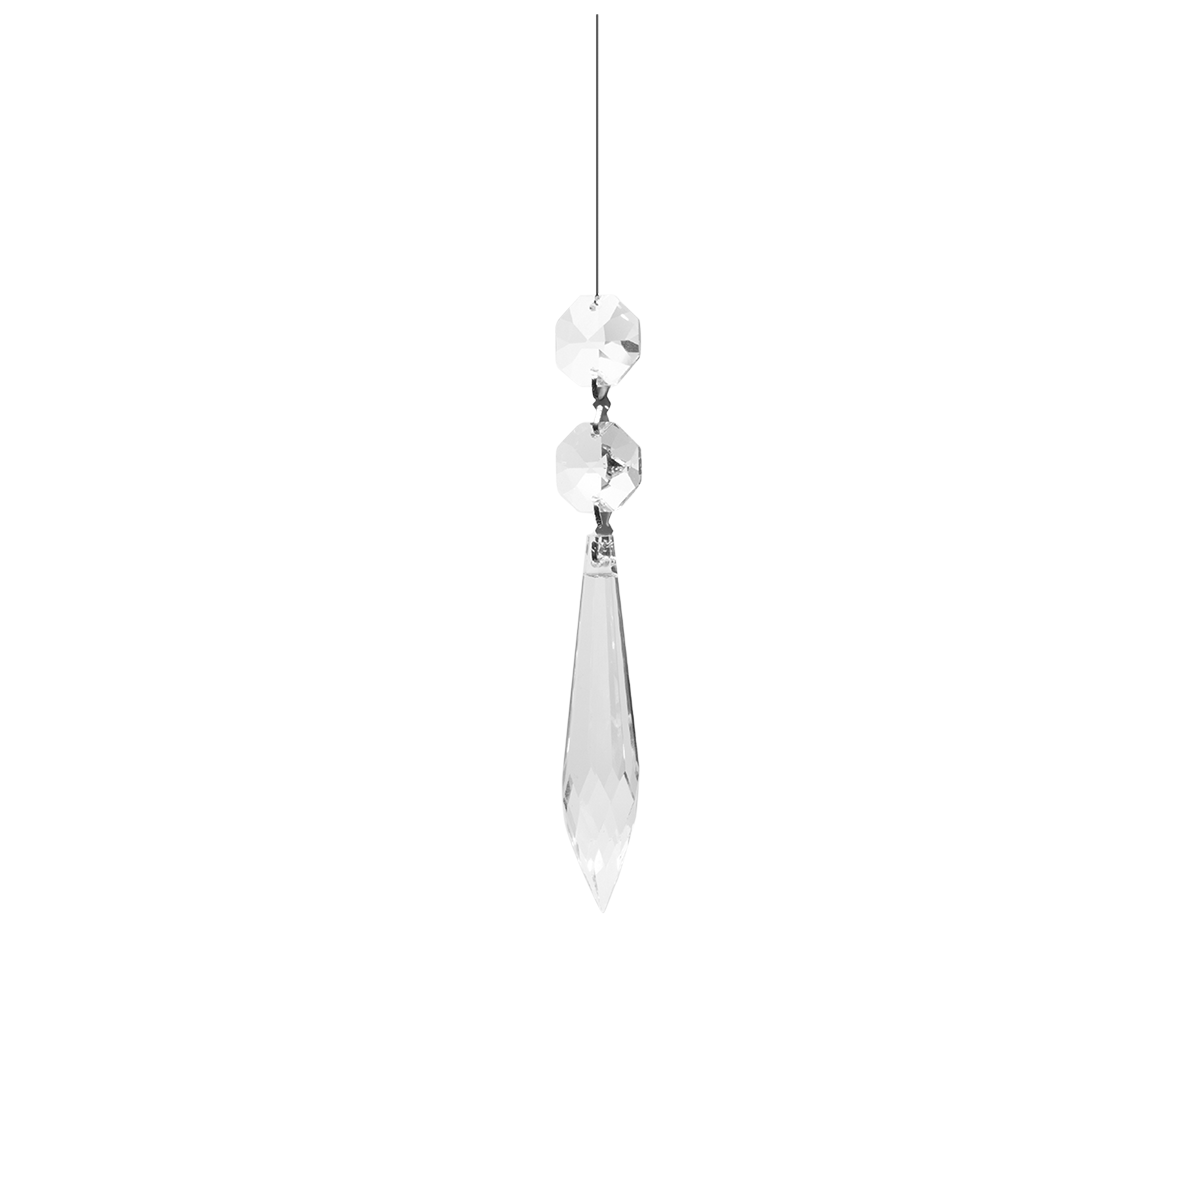 Kristallbehang Zapfen 2 Stück als Paar verbunden mit Edelstahl Faden zum dekorieren  für Kronleuchter oder Balkenleuchten